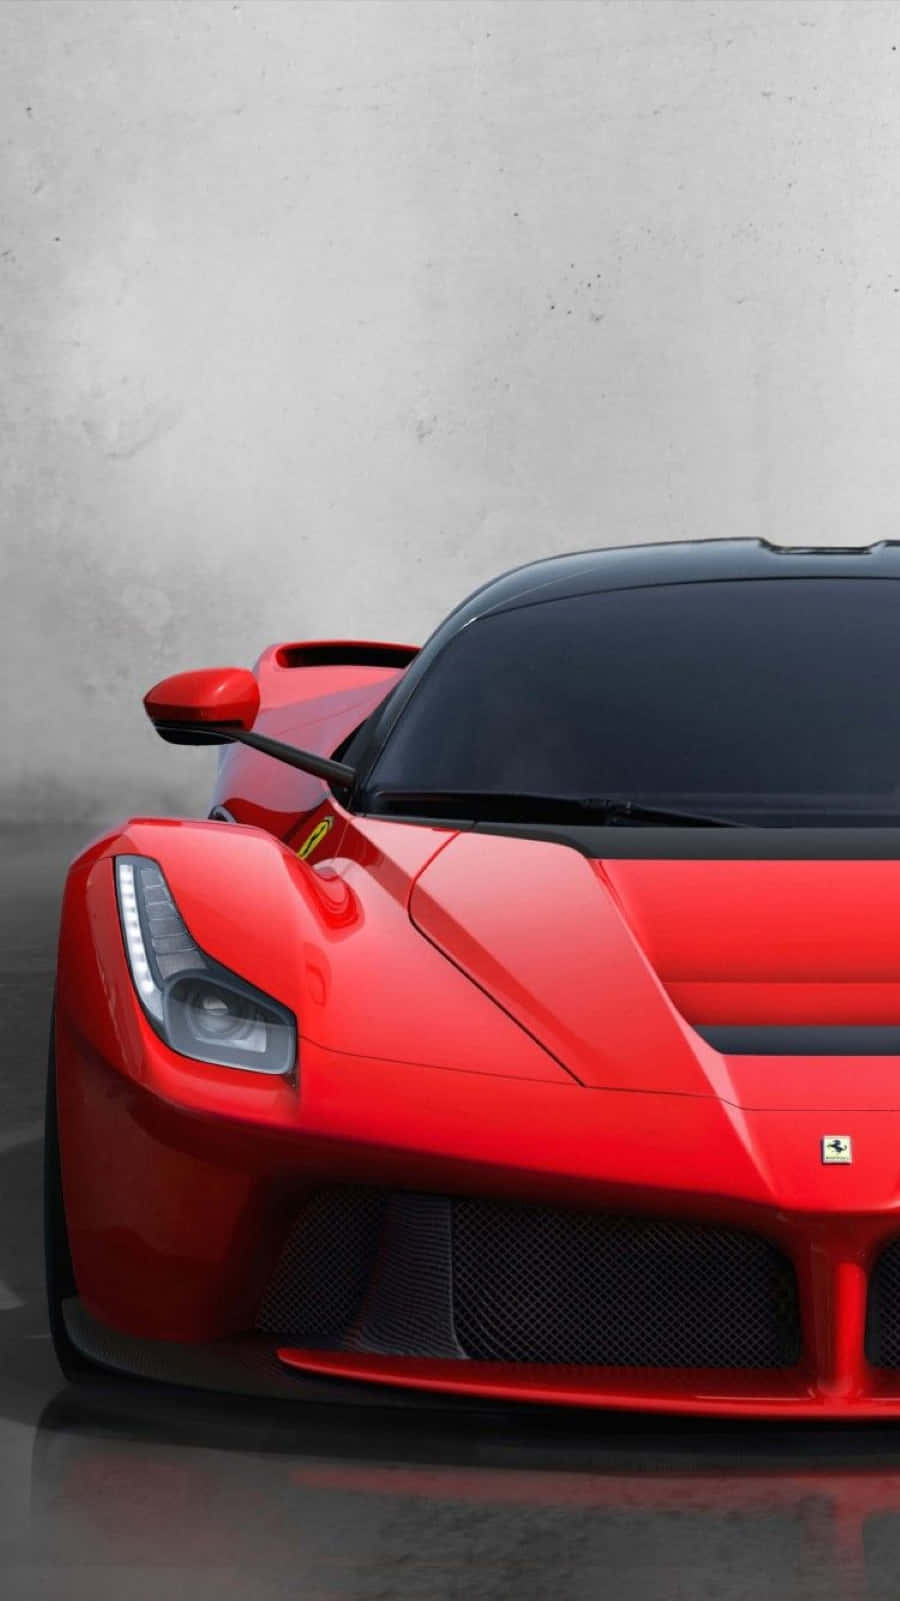 Ferrari LaFerrari - Red Masterpiece on the Road Wallpaper